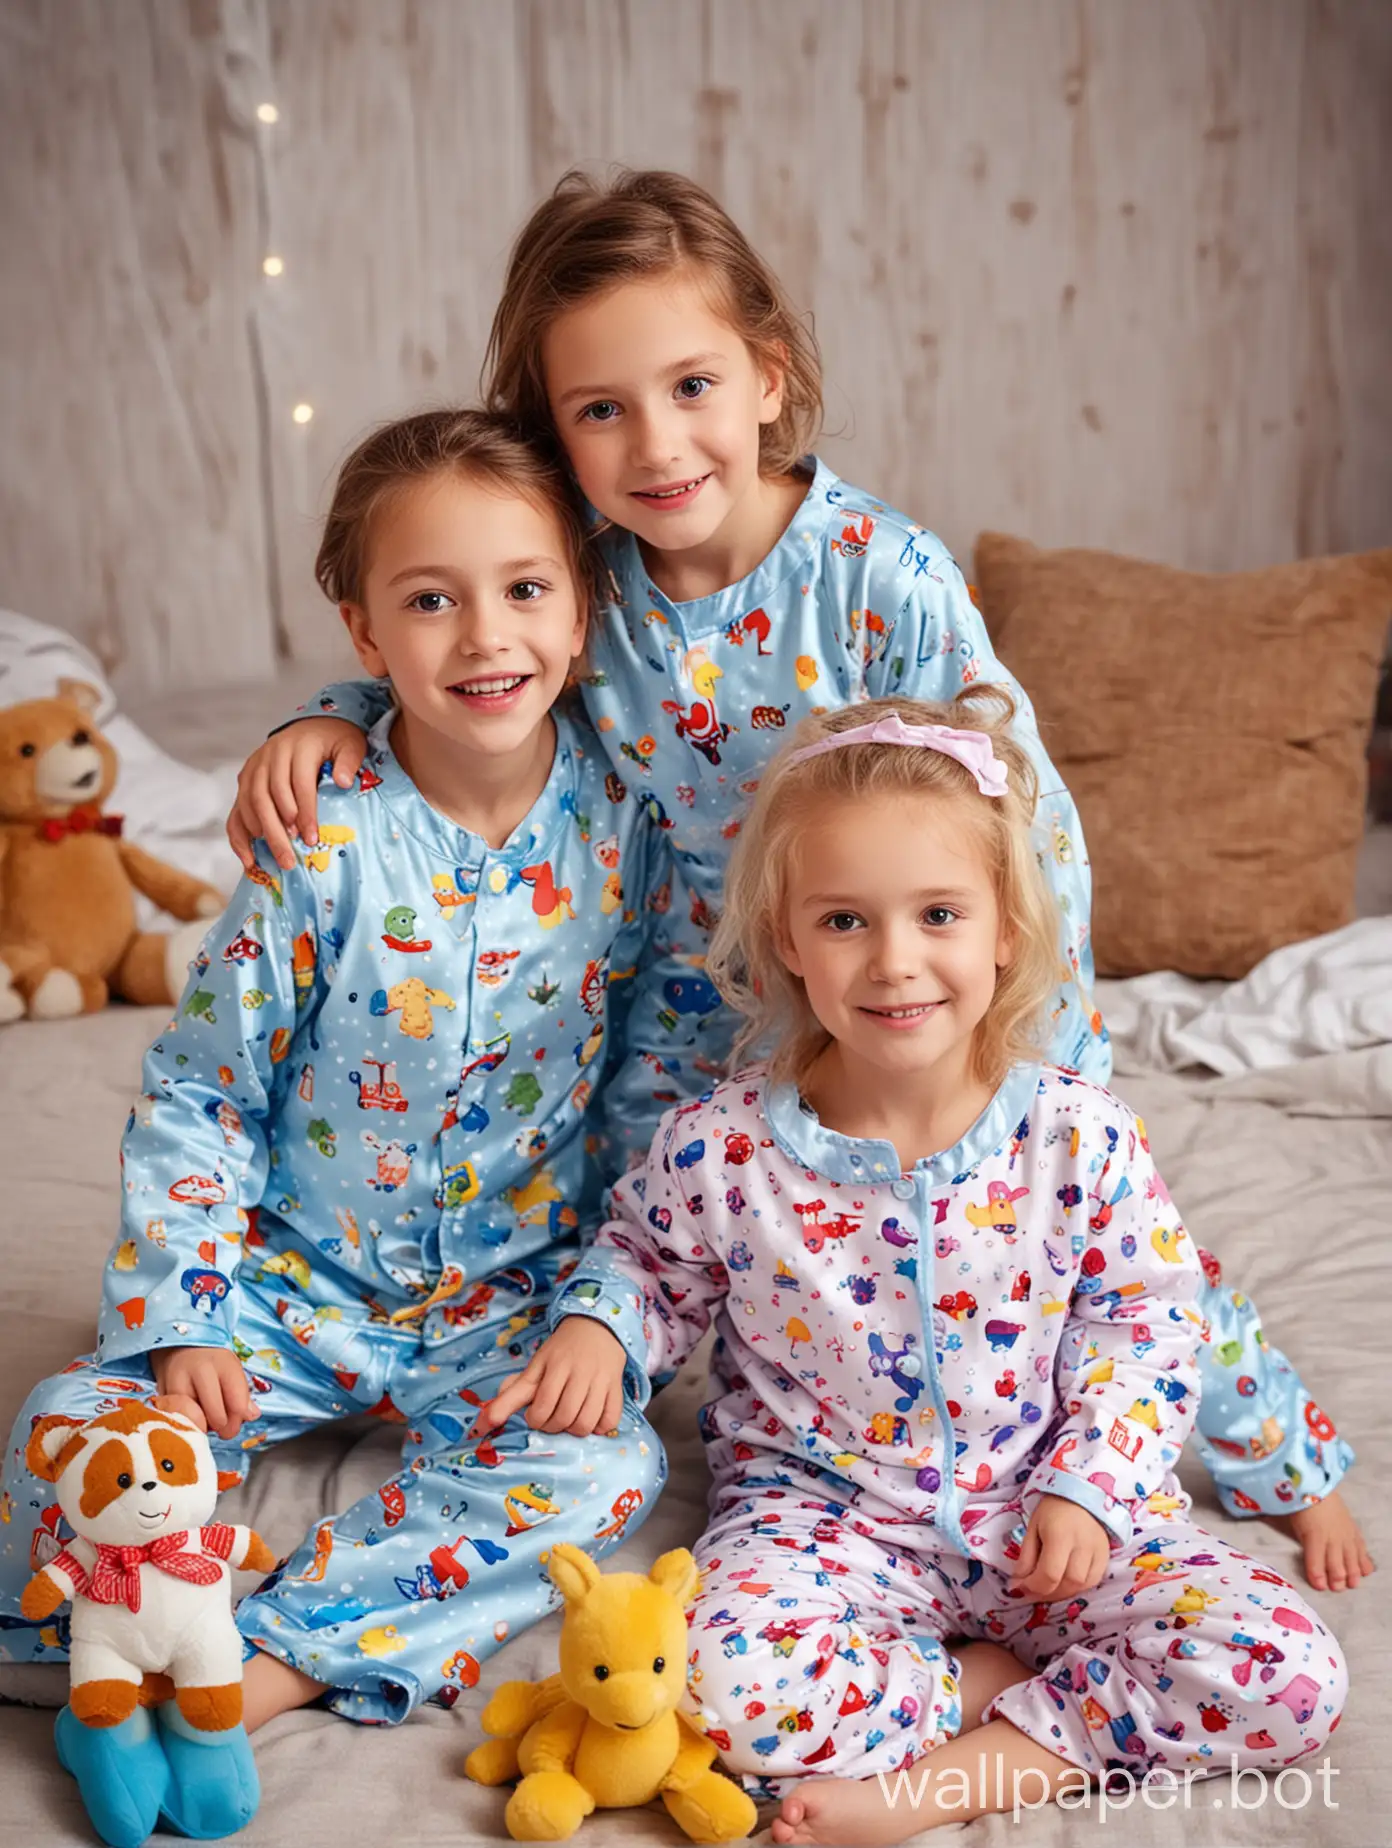 Playful-Children-in-Pajamas-Enjoying-Fun-with-Toys